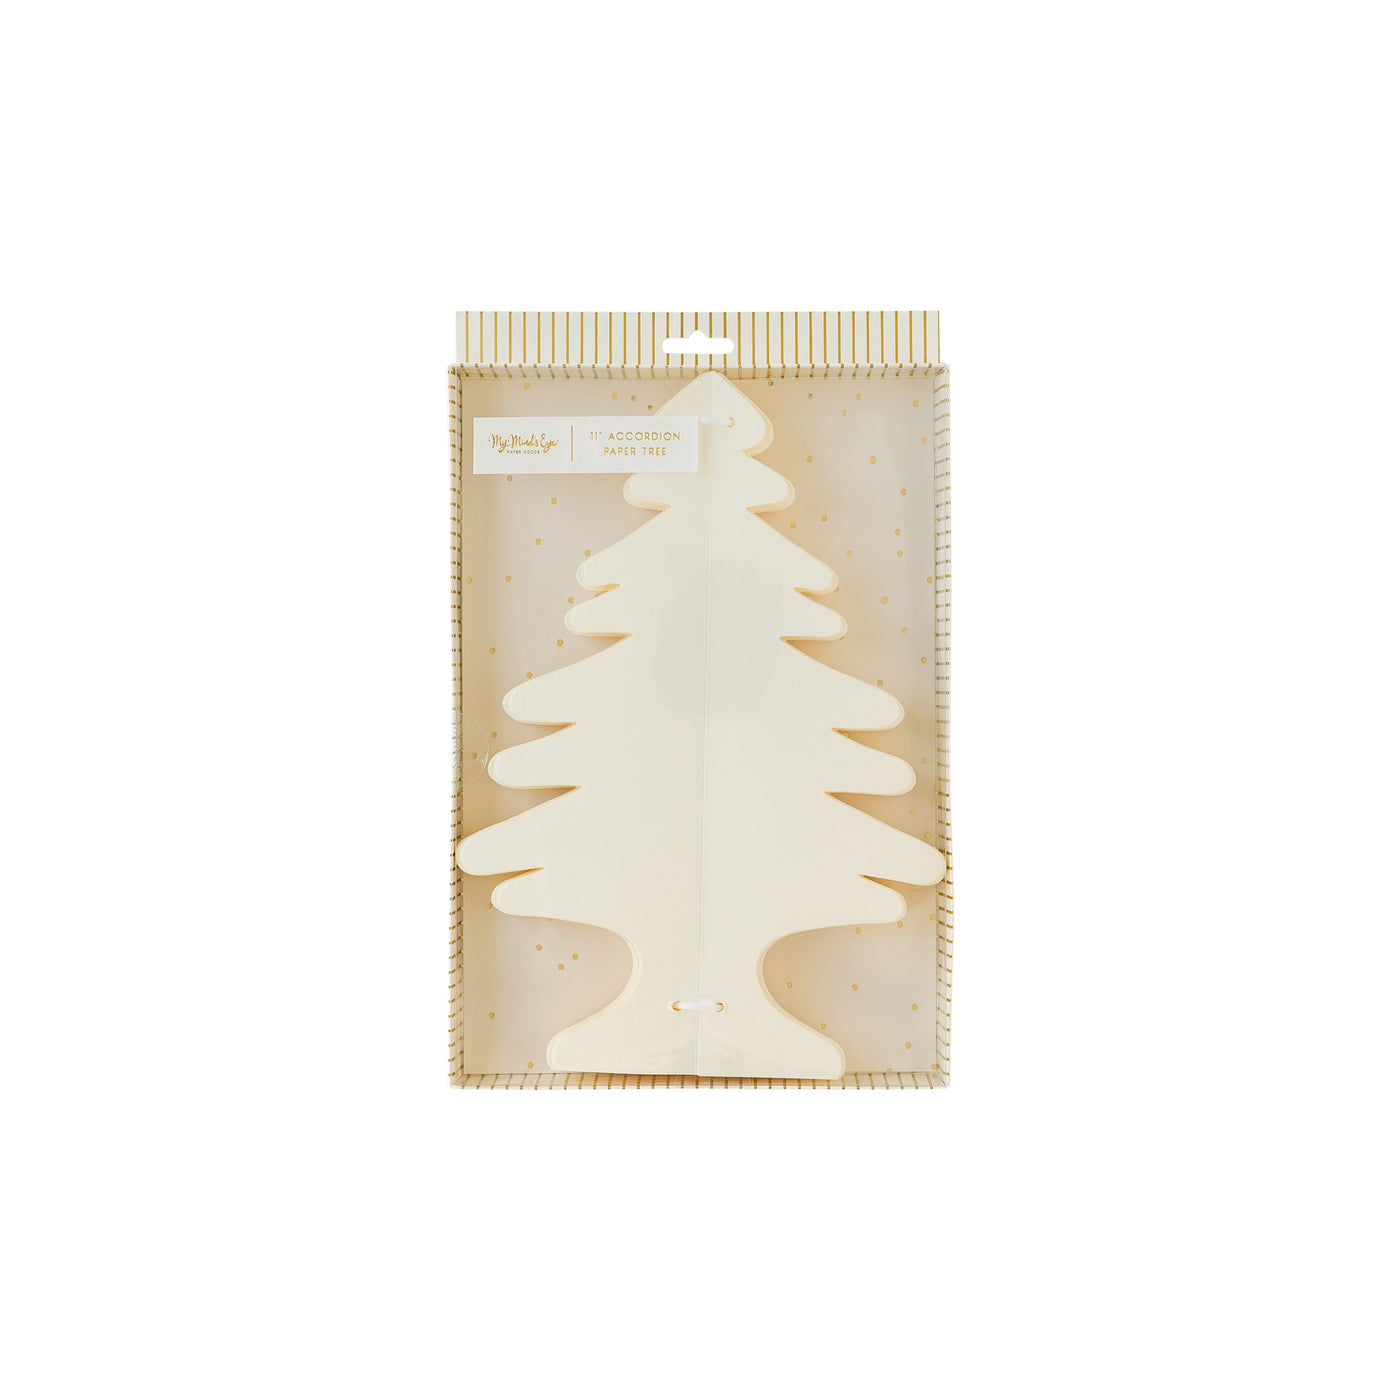 GLD907 - Golden Holiday Medium Paper Tree Decor